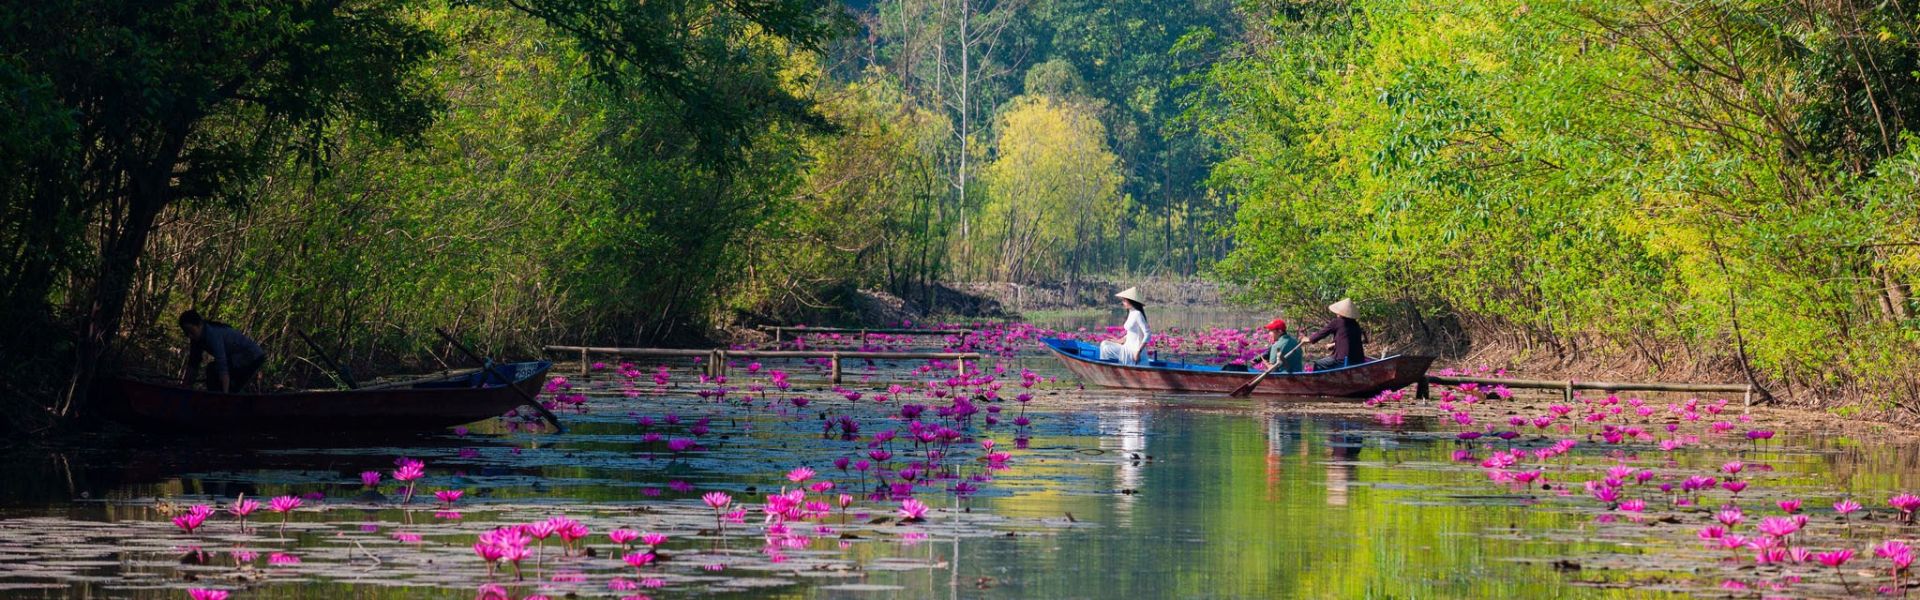 Hanói - Consejos de viaje | Guía de viajes a Vietnam